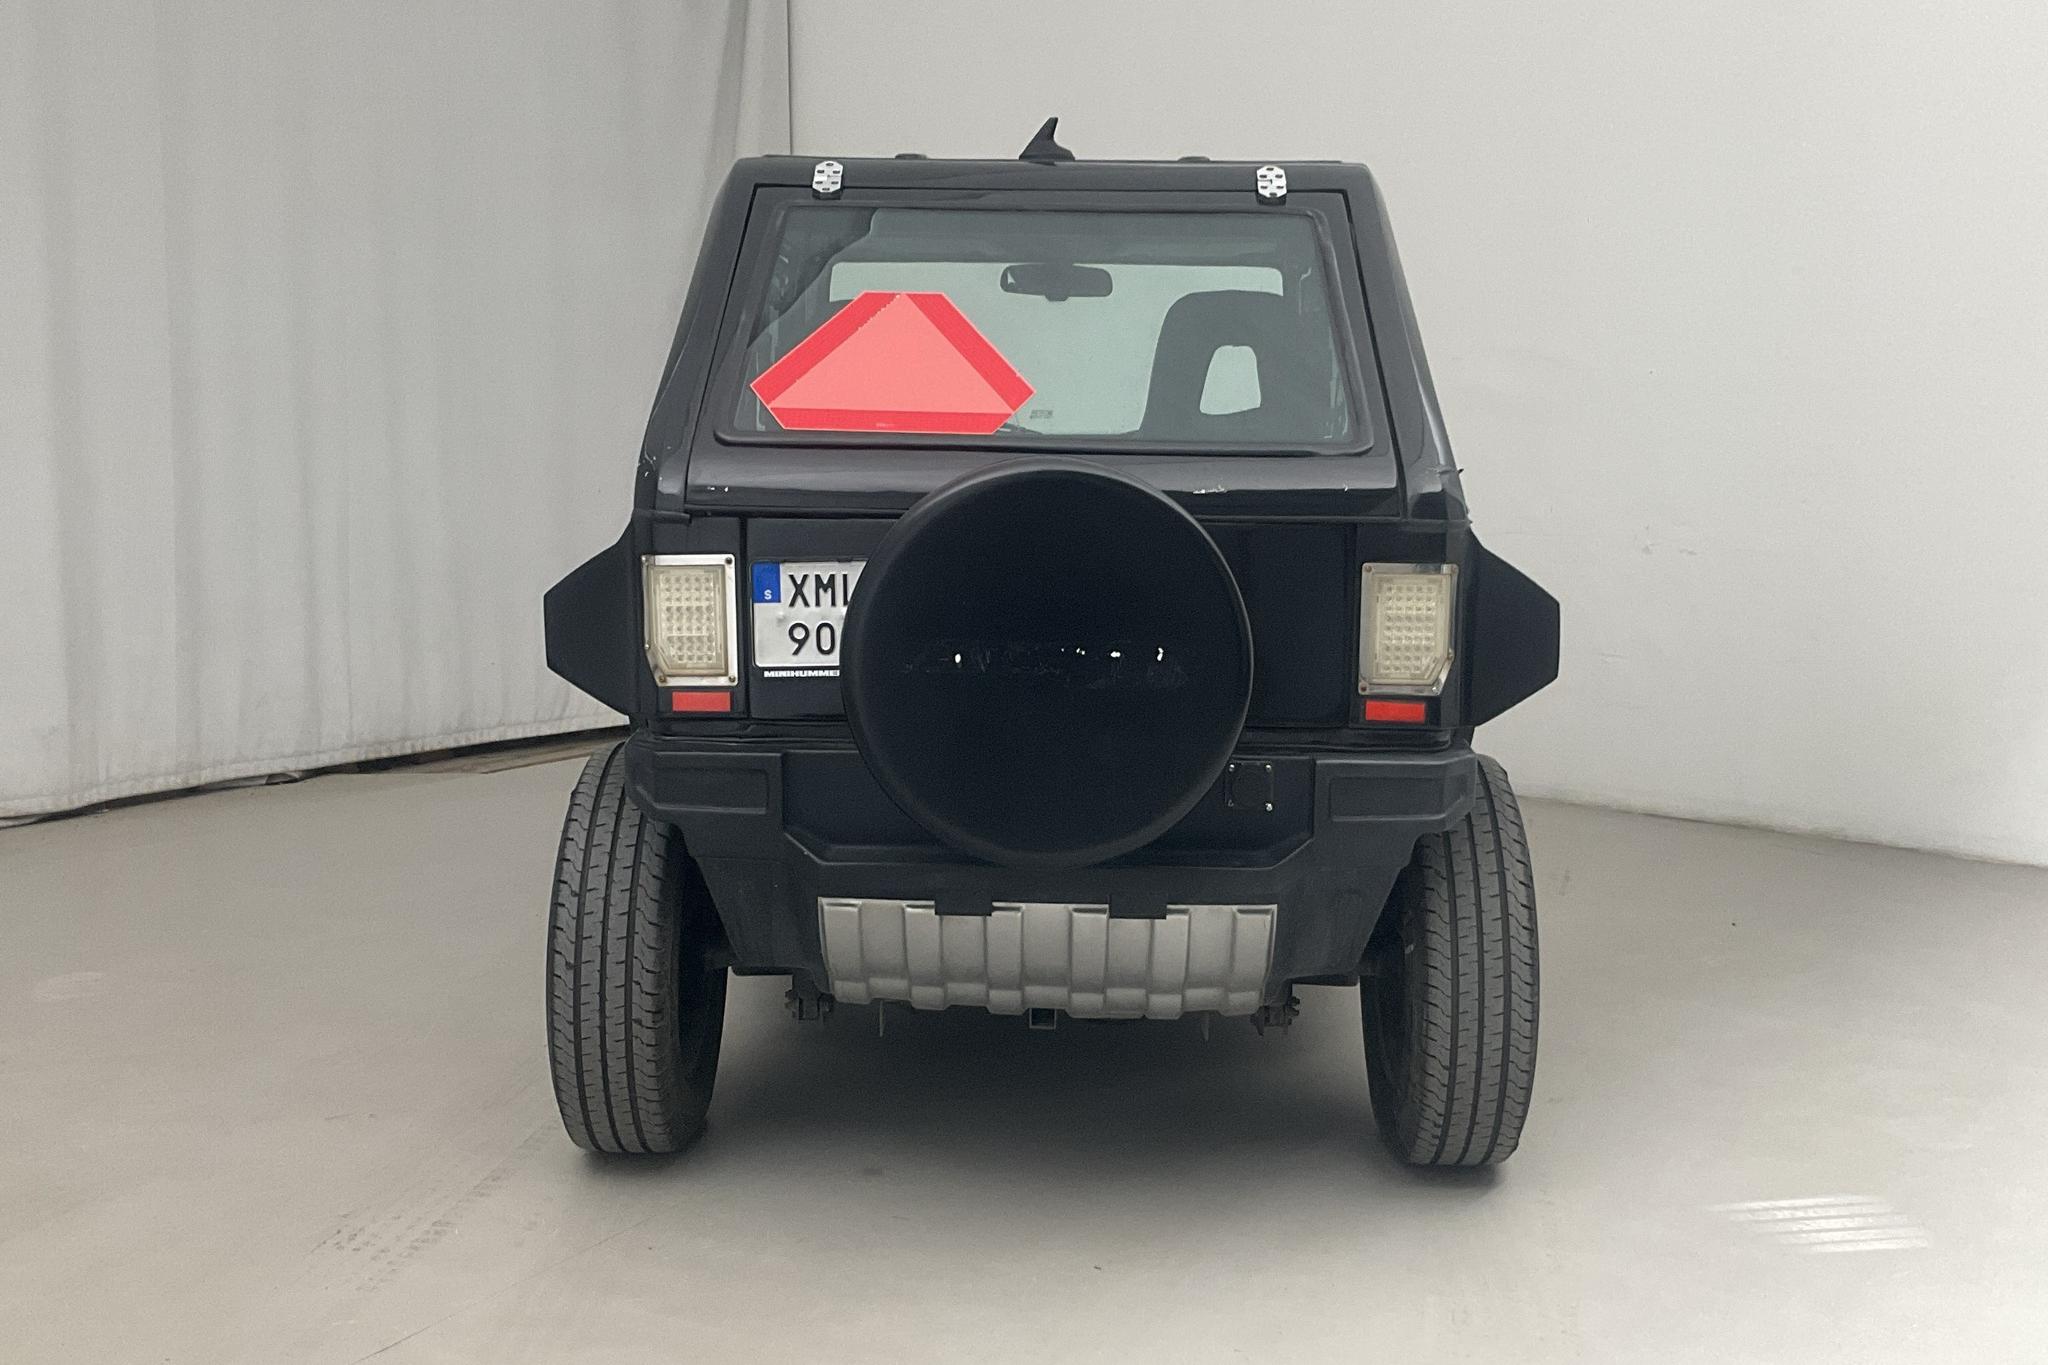 SDV HX Mini HUMMER Mopedbil Eldriven (Rep.objekt) - 78 mil - Automat - svart - 2020